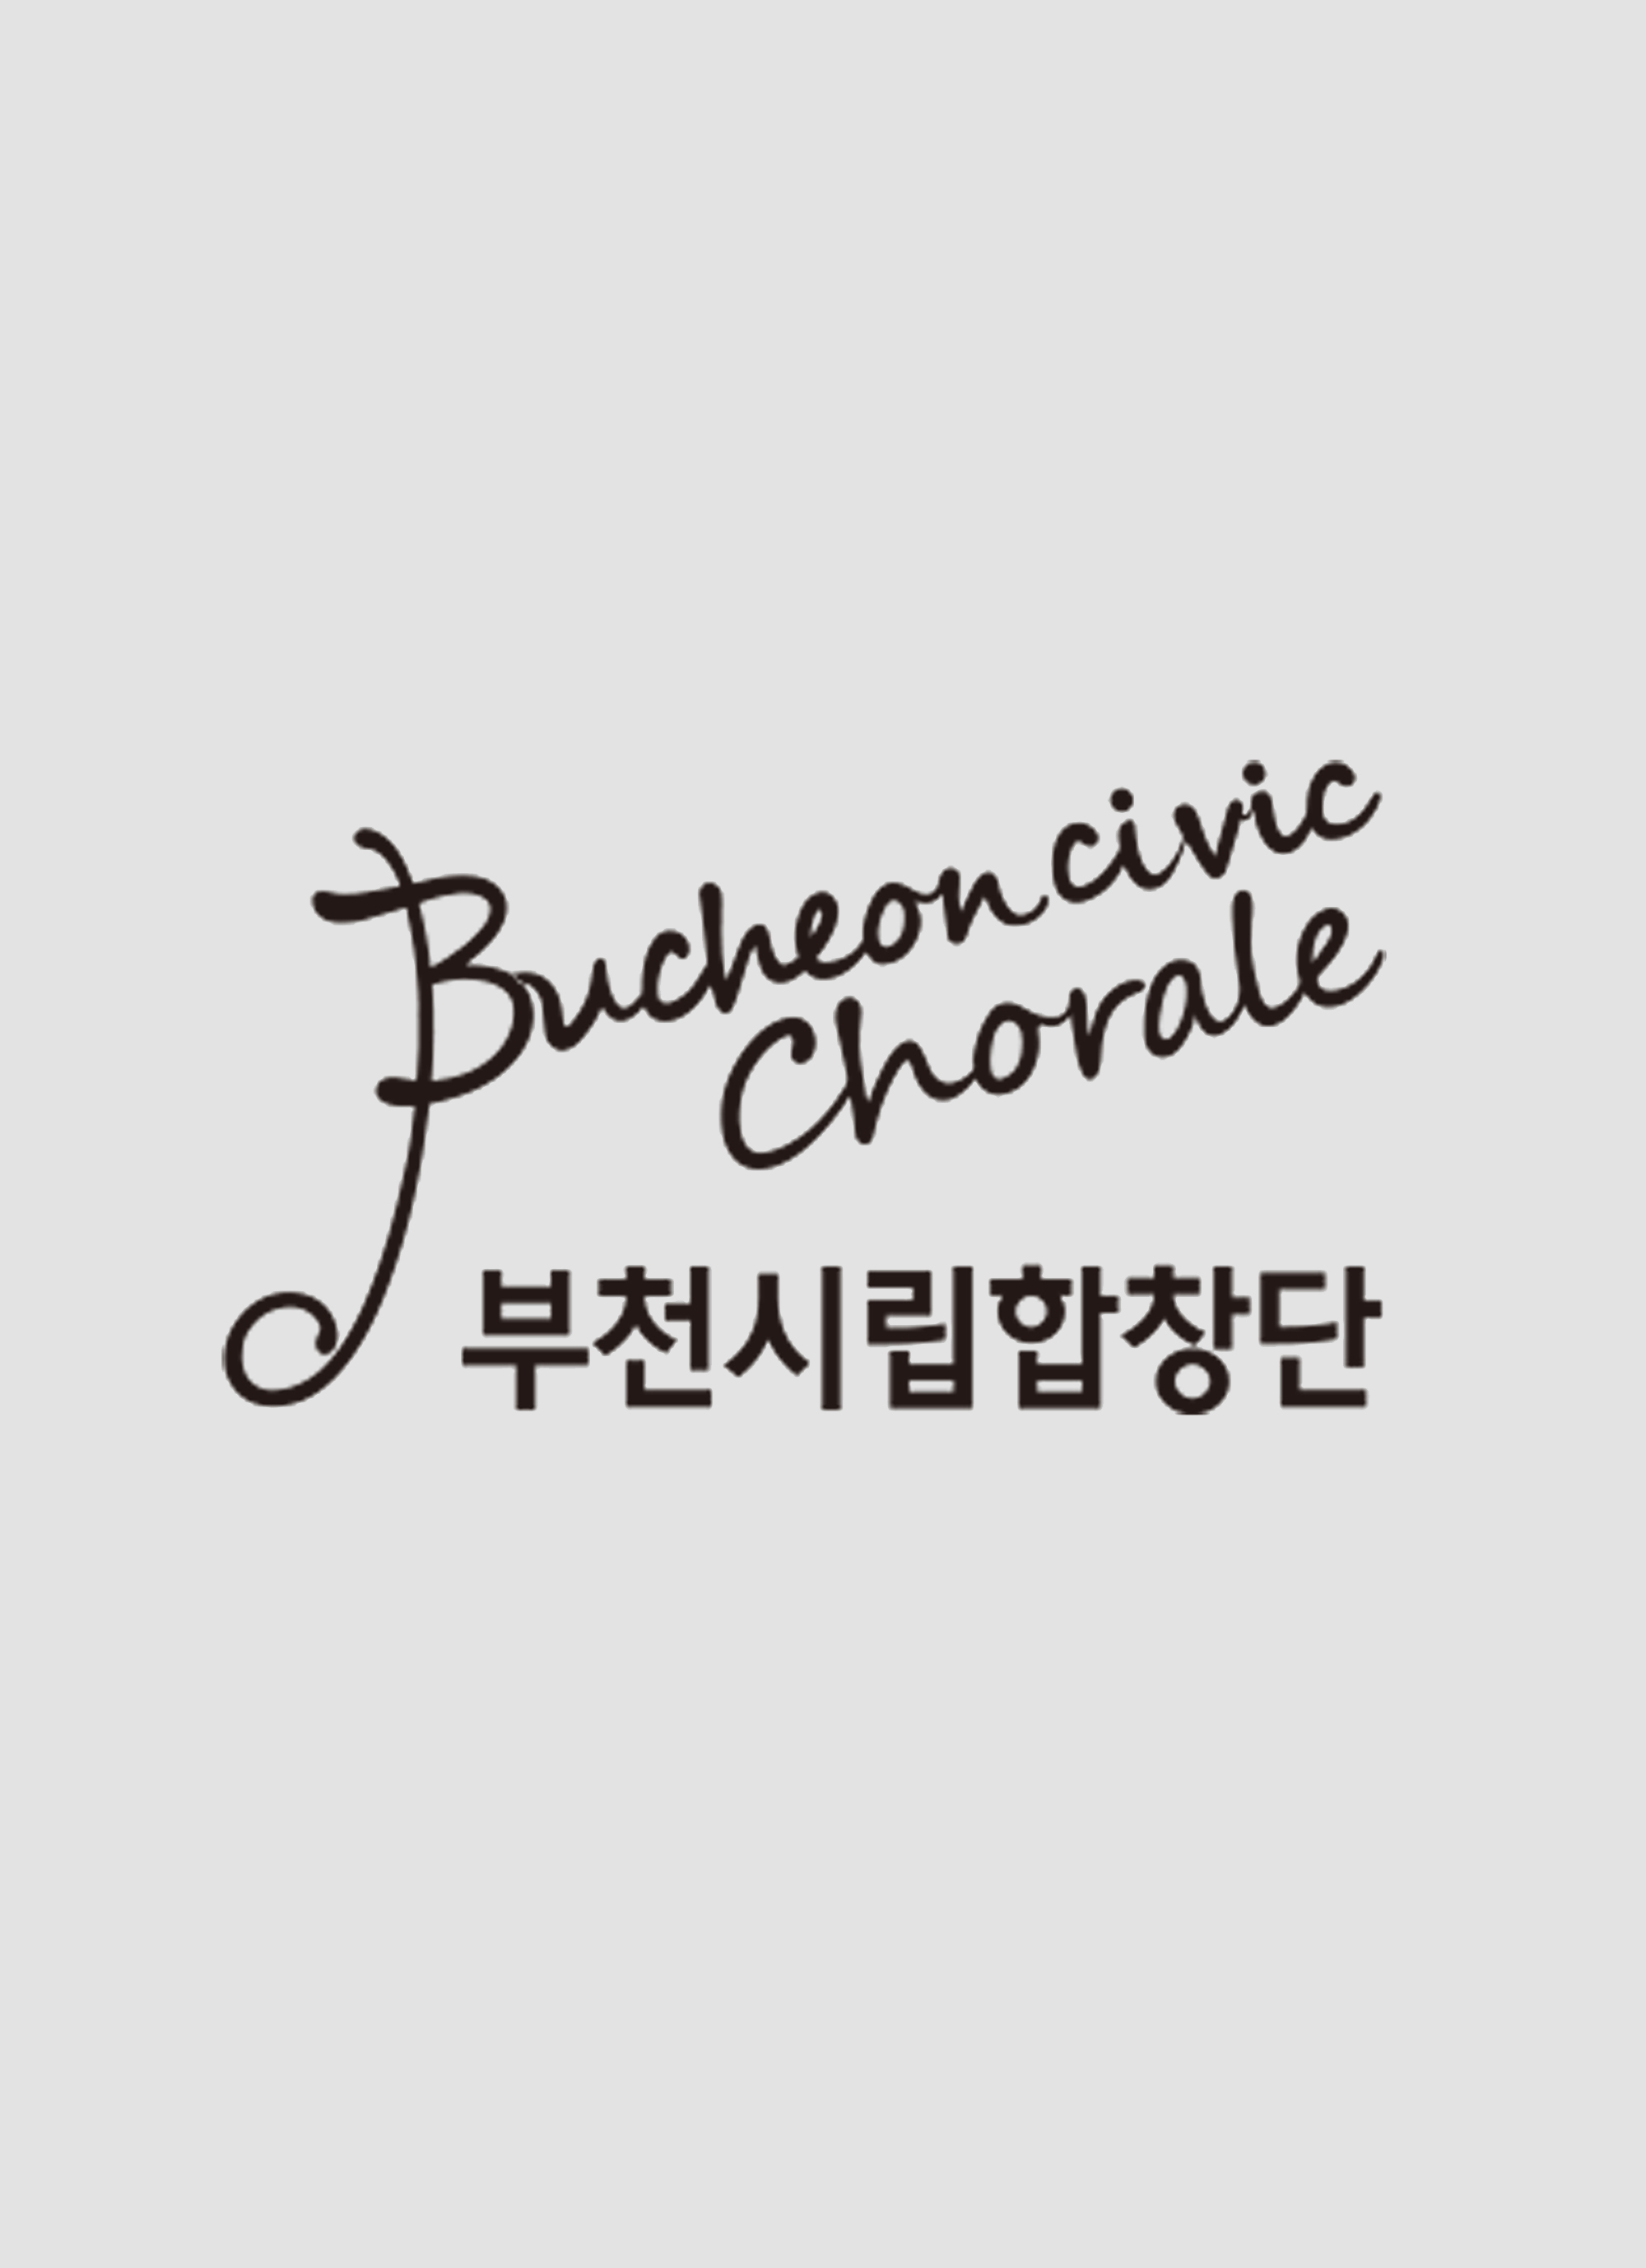 Bucheon Civic Chorale Children’s Concert